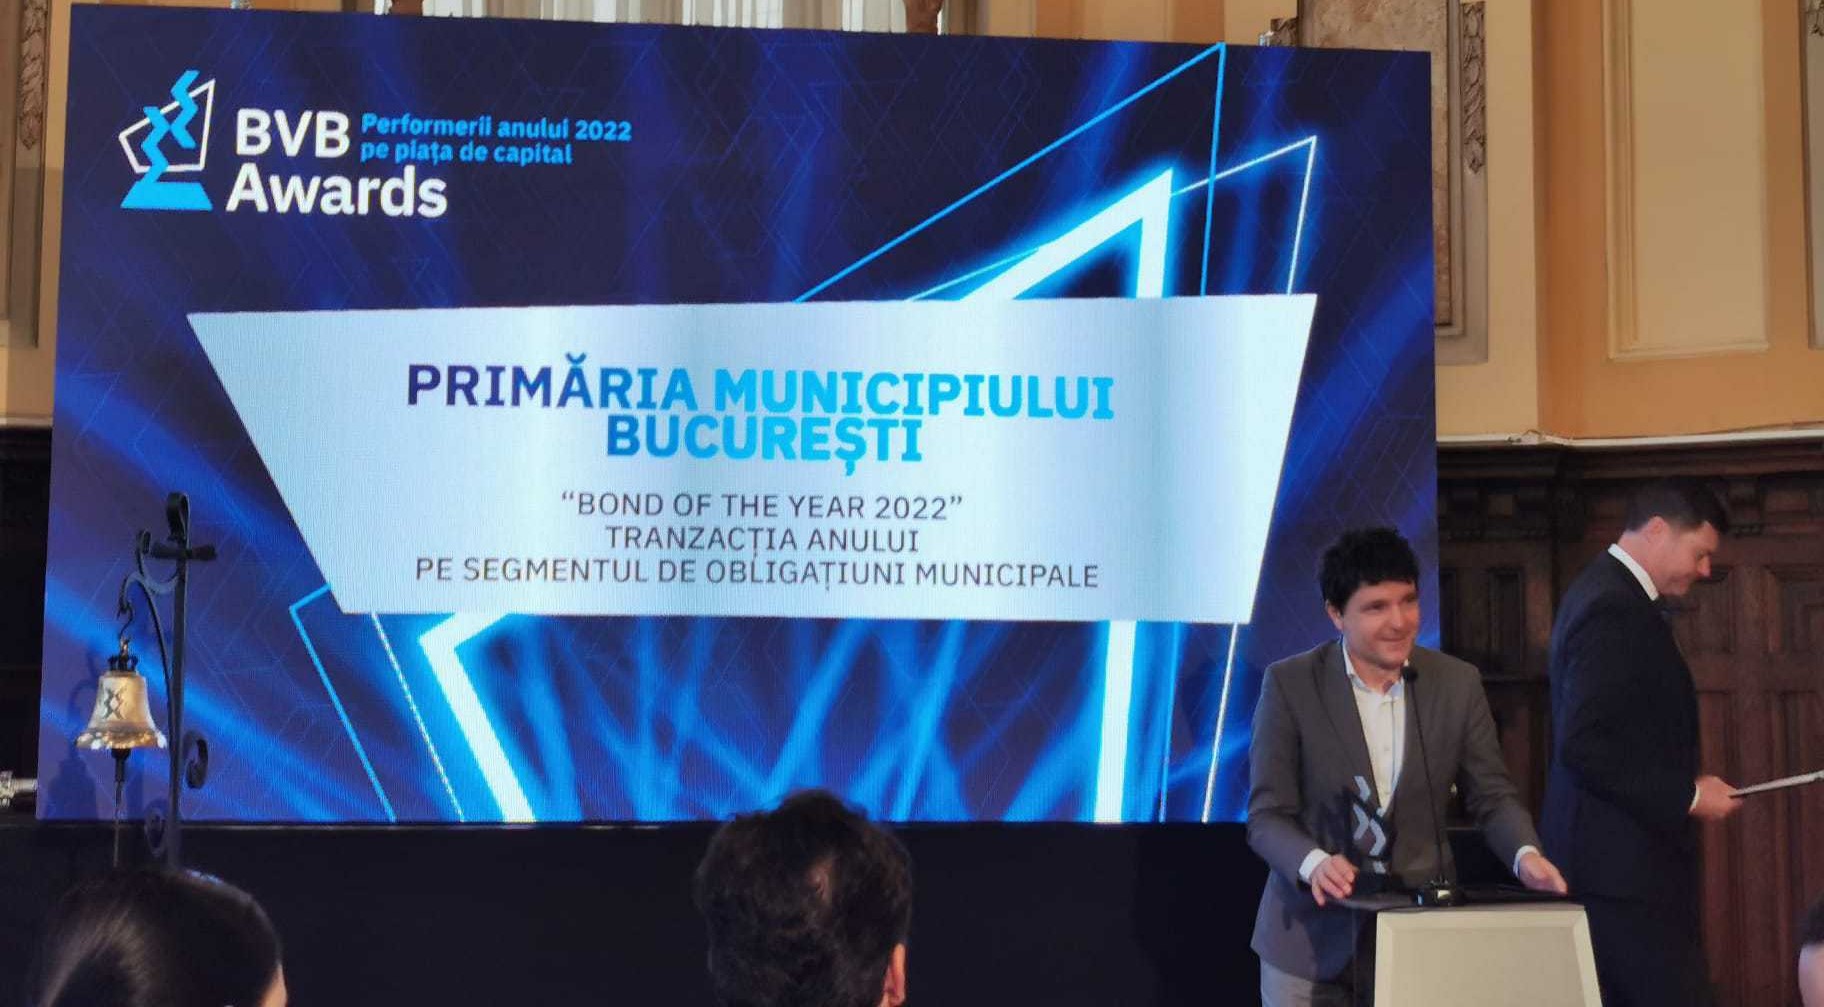 Primăria Municipiului Bucureşti, premiul „Bond of the year 2022” la BVB. Nicuşor Dan: Vă aşteptăm în aprilie la o nouă emisiune de obligaţiuni